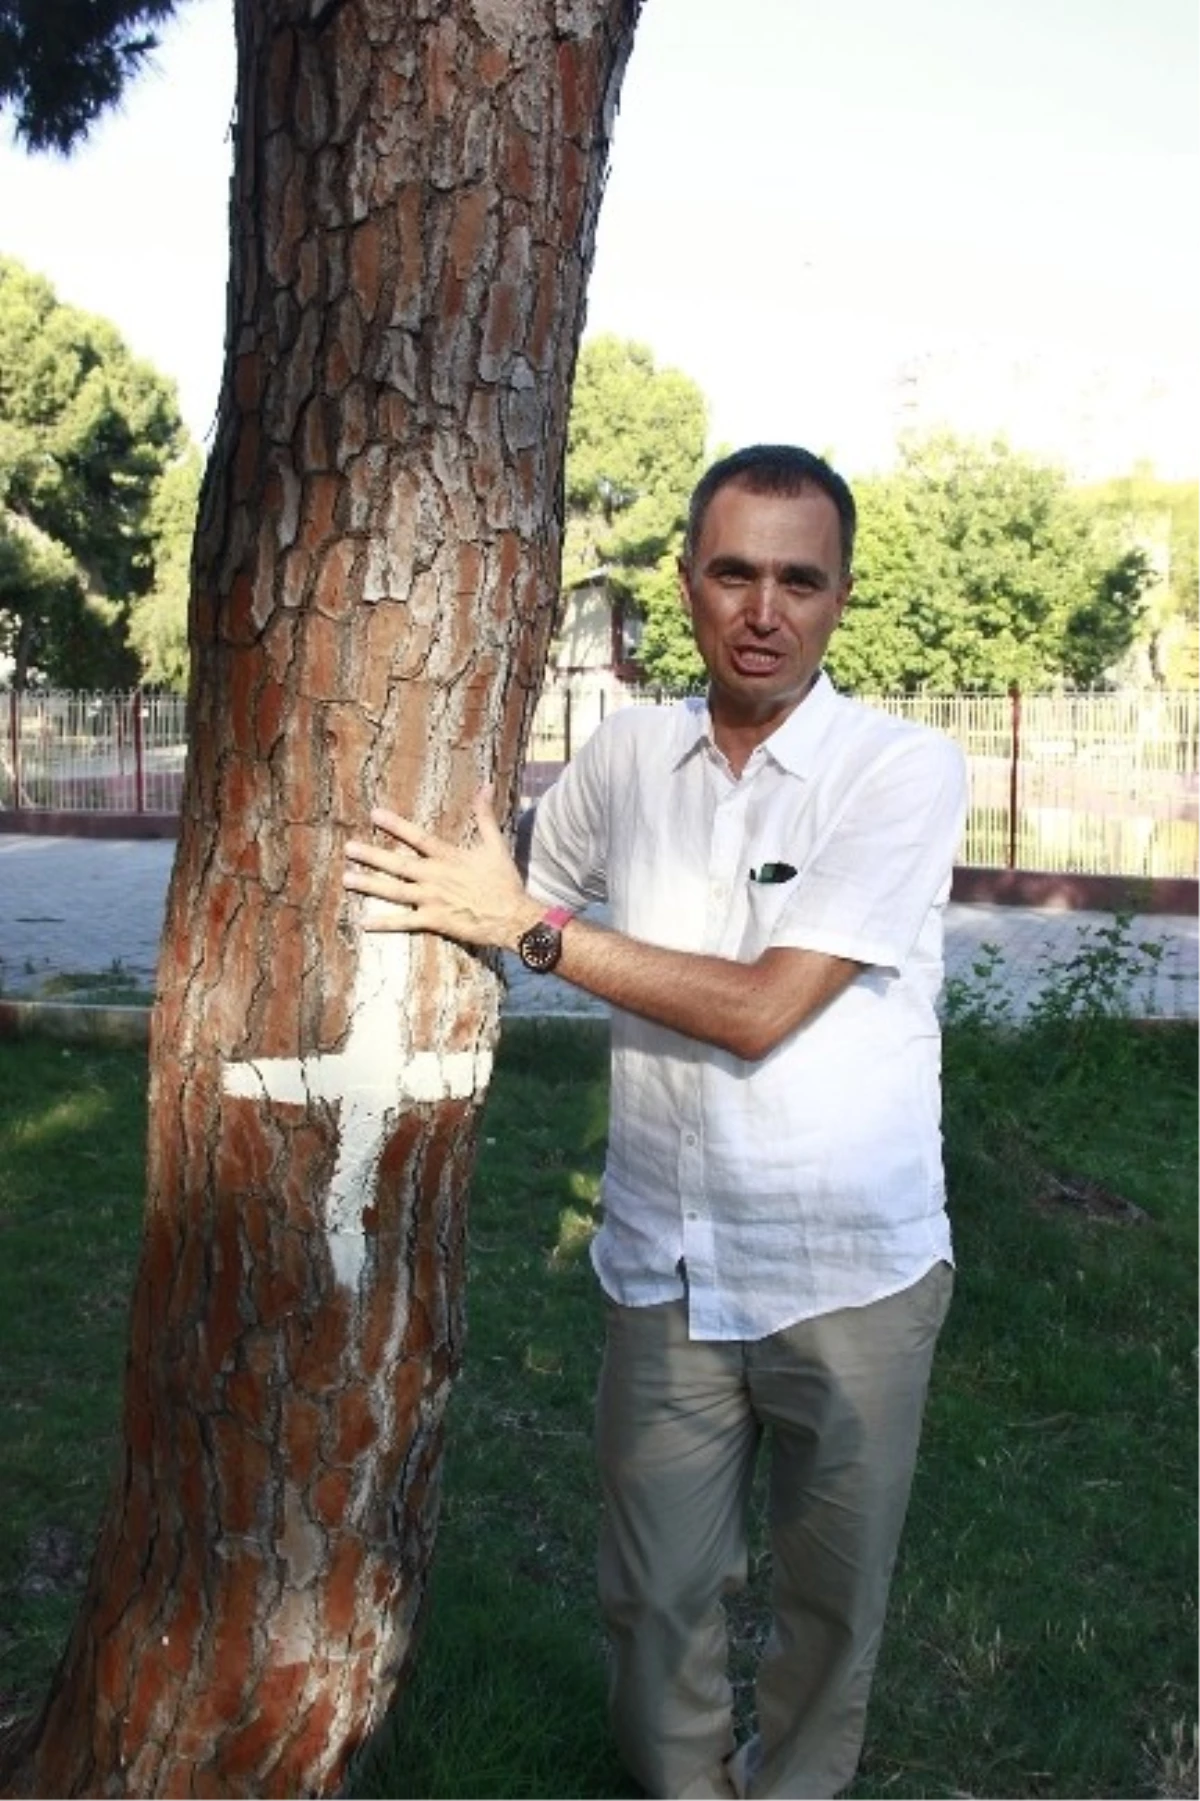 Kesilecek Ağaçlar İçin "Evlat Edinme" Kampanyası